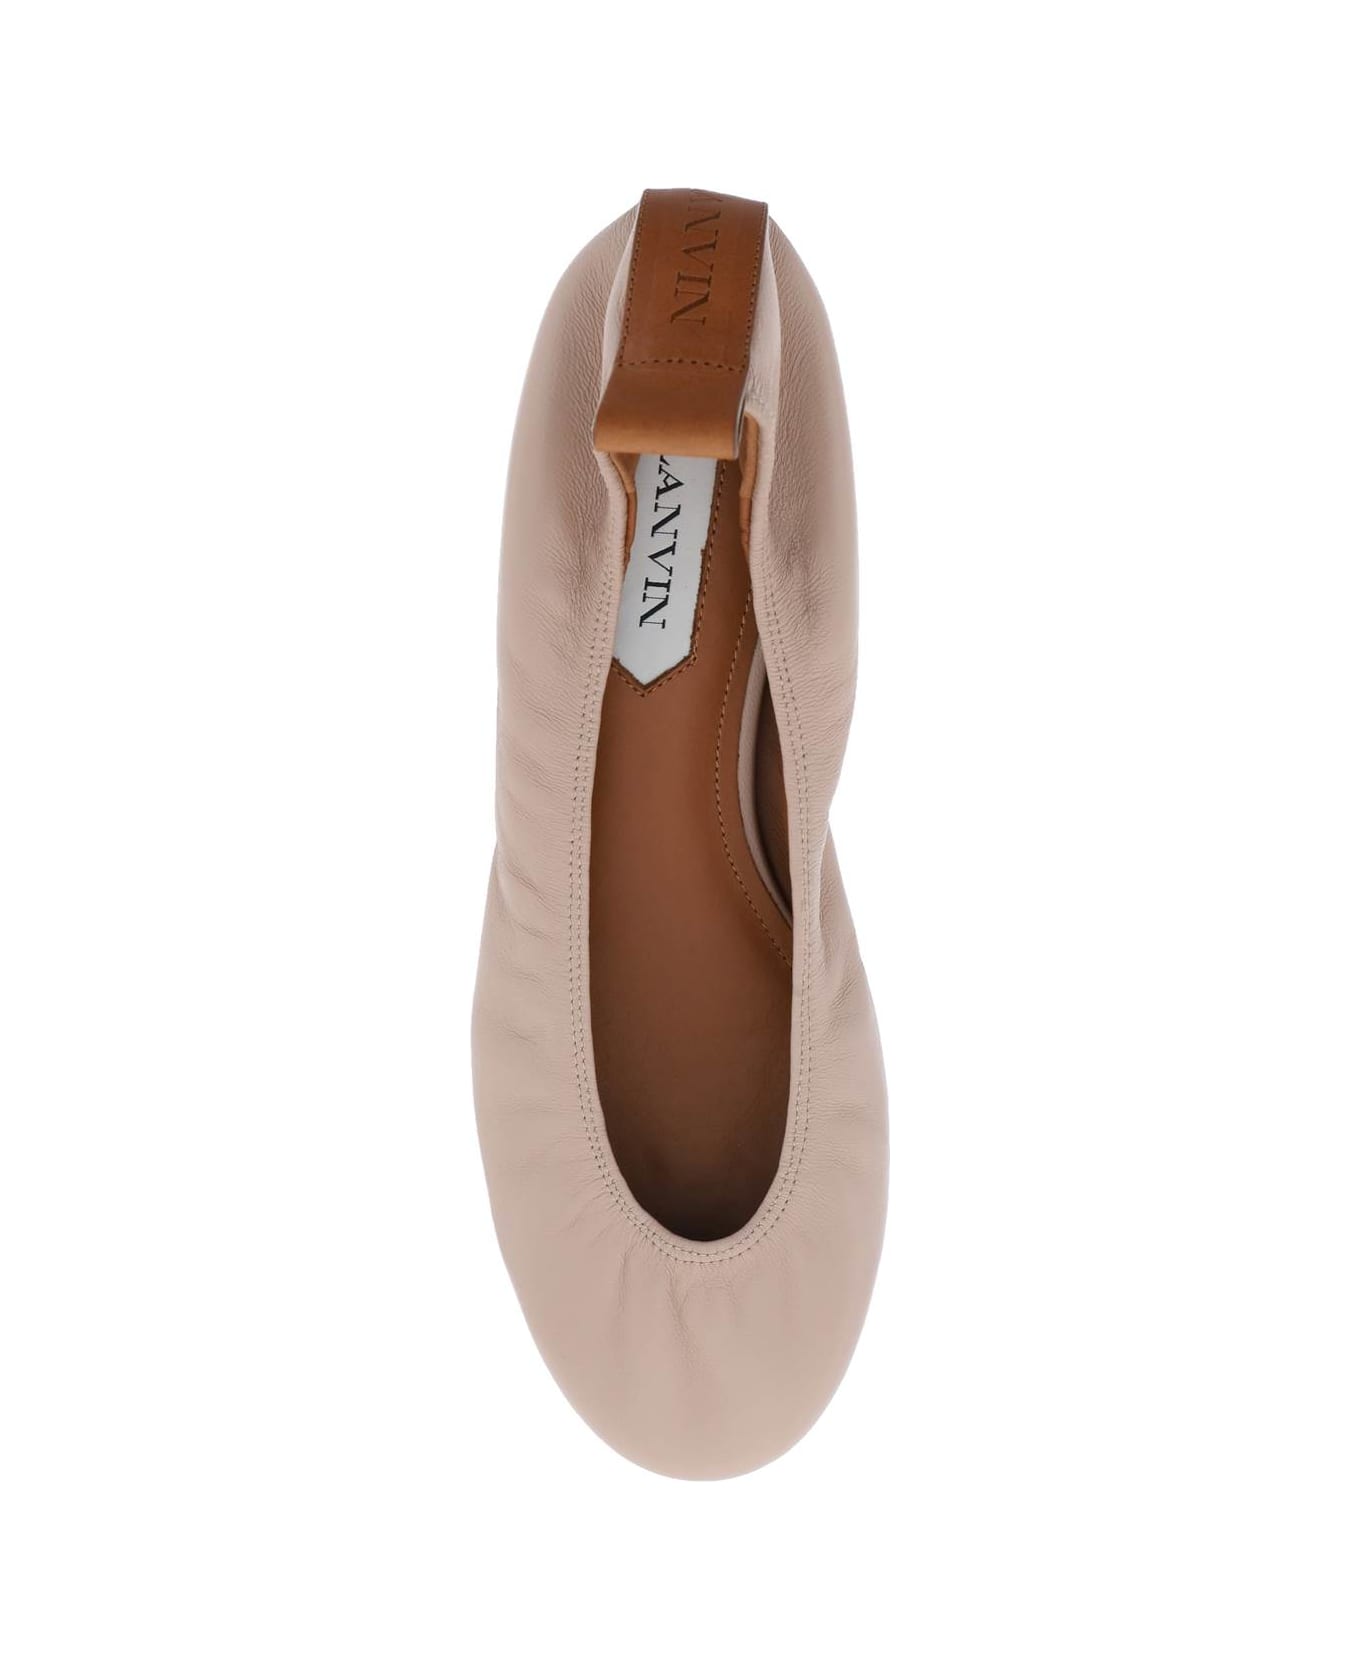 Lanvin Ruch Detailed Slip-on Ballerina Shoes - DARK BEIGE フラットシューズ